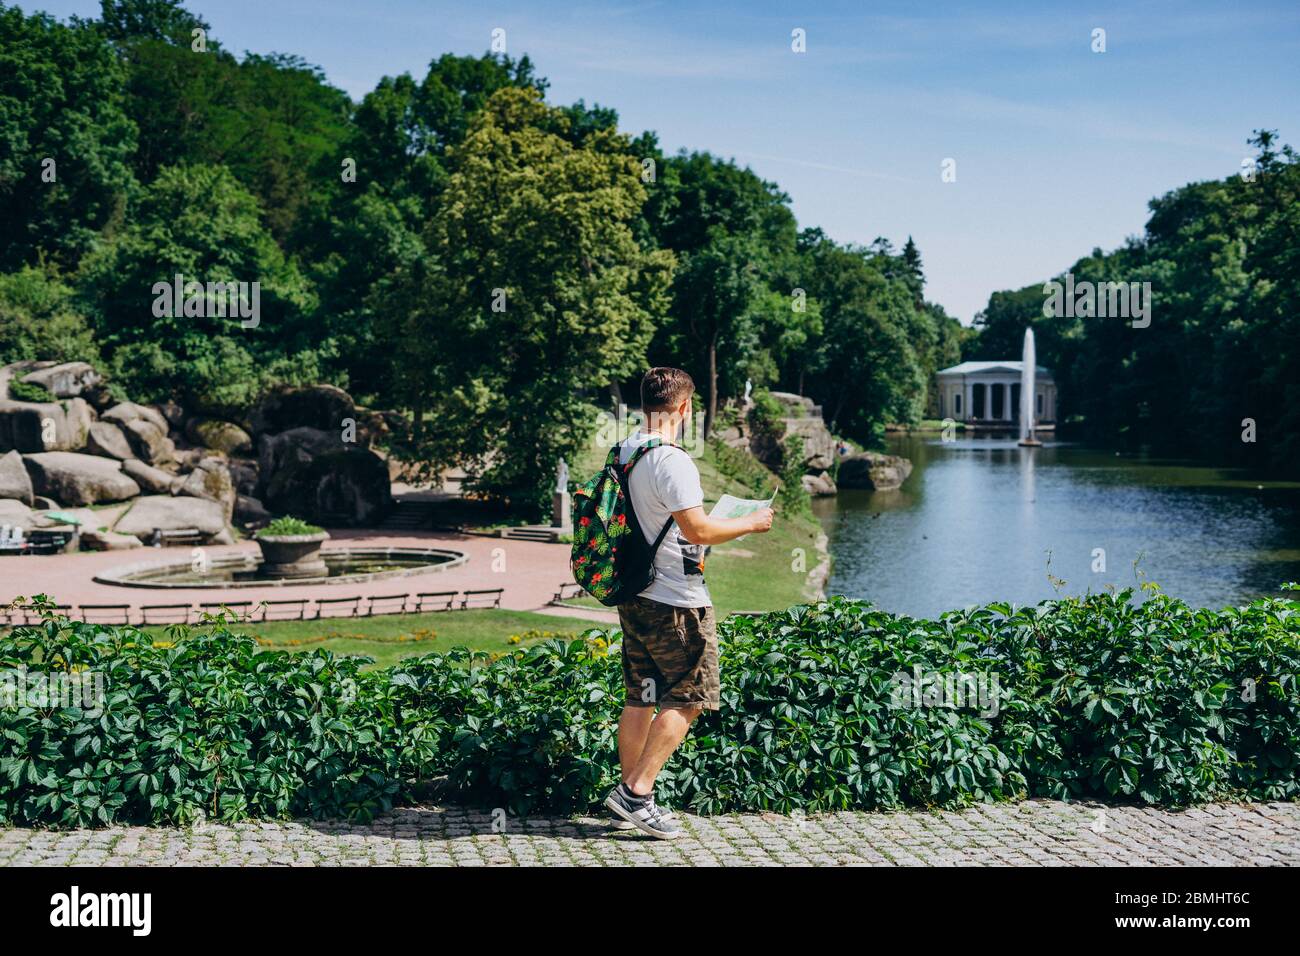 Sofia Park, Ukraine. Mann mit Rucksack und Touristenkarte im Sommer in einem Landschaftspark. Typ in einem T-Shirt mit einer Touristenkarte auf dem Hintergrund von Th Stockfoto